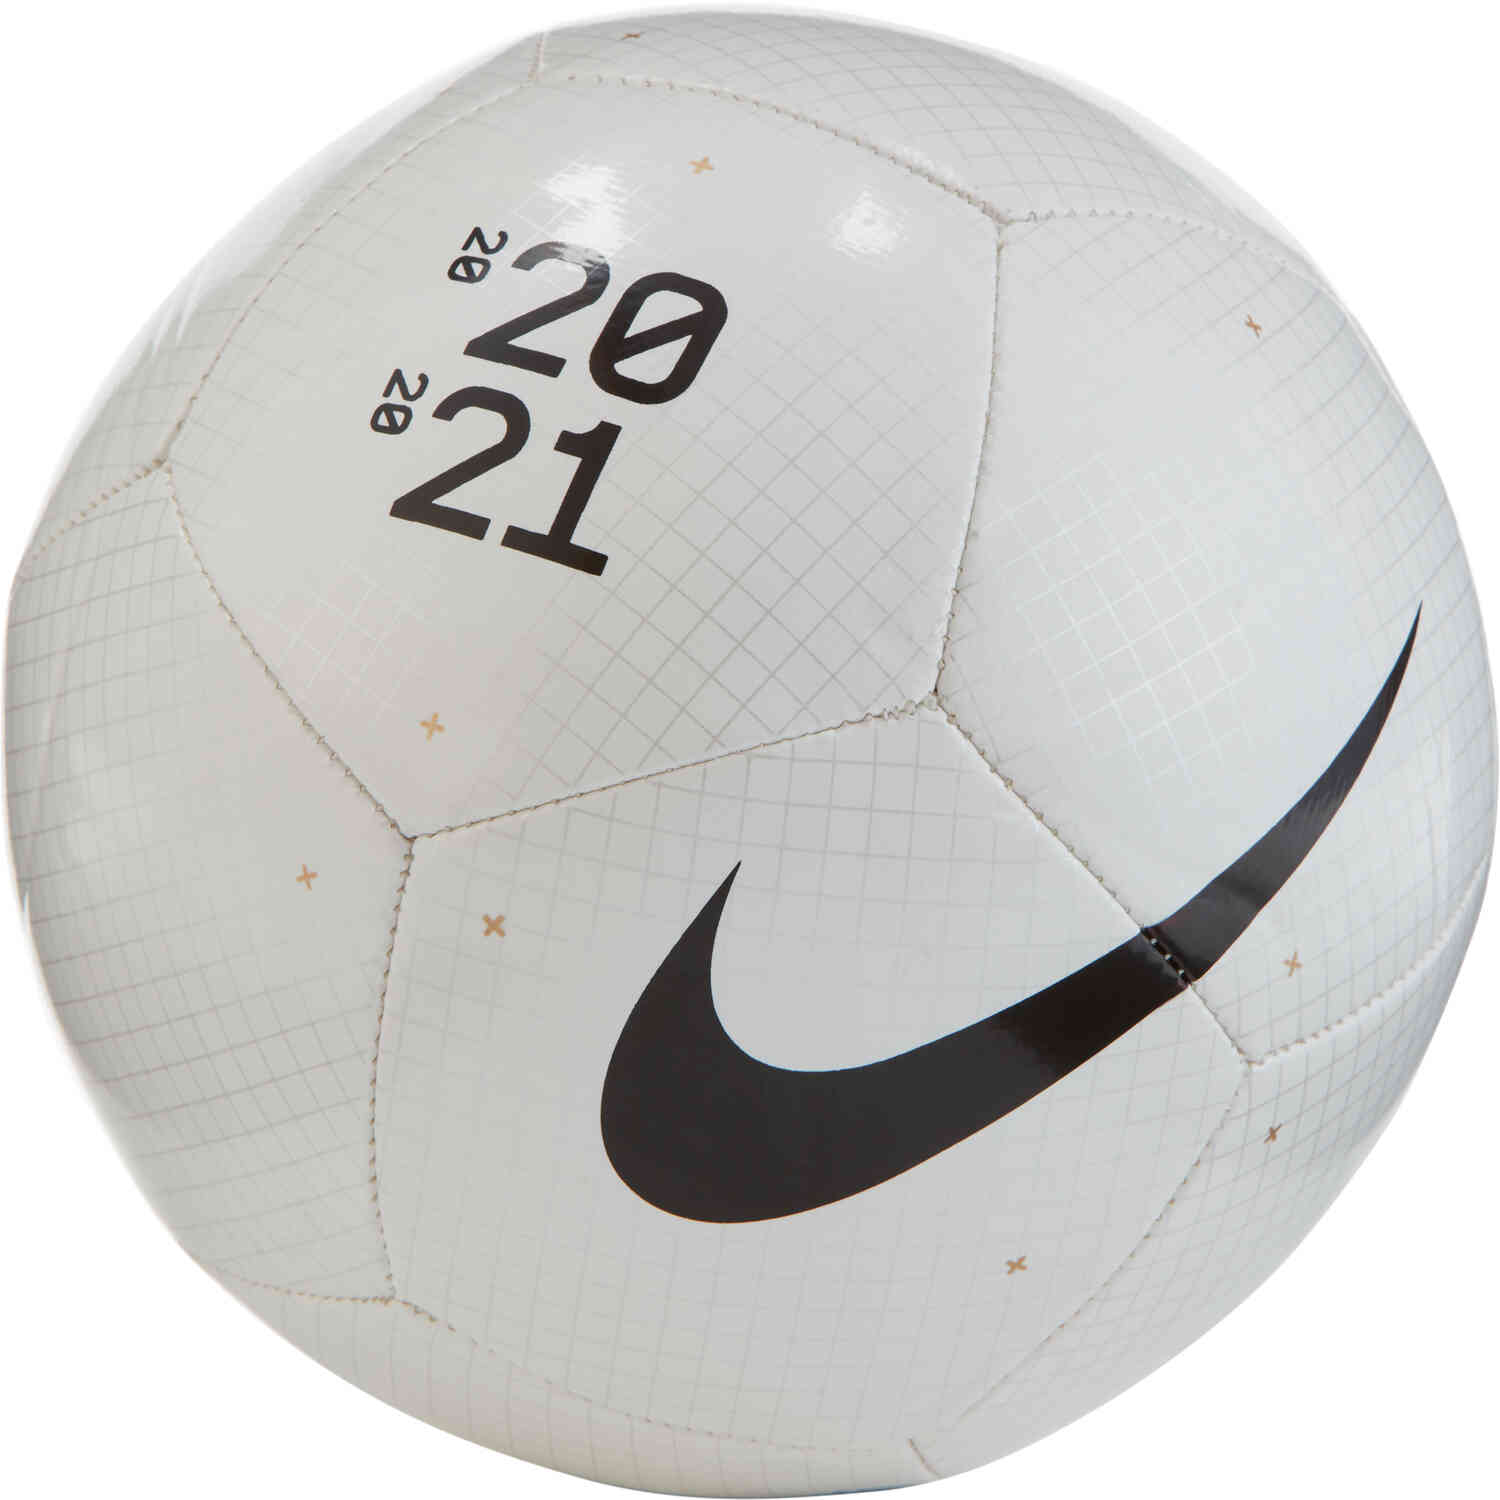 nike flight soccer ball for sale